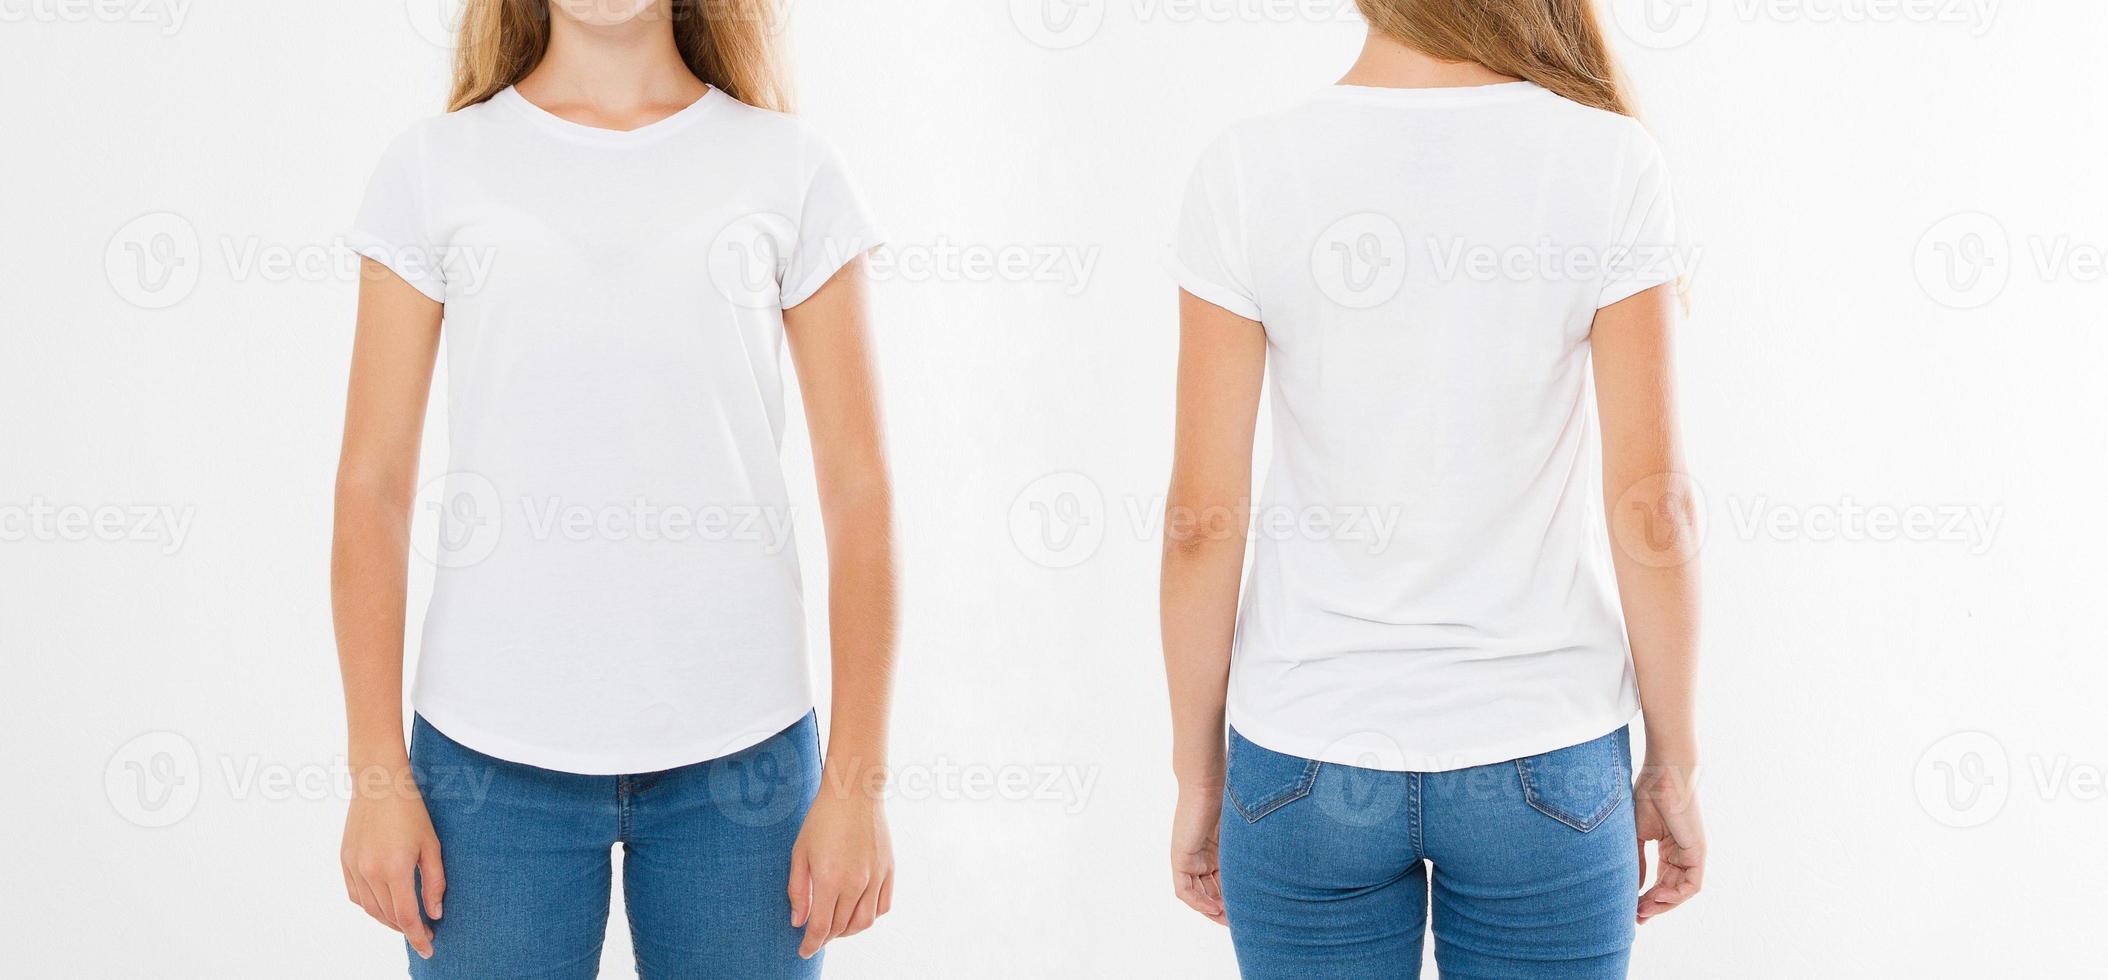 voor- en achterkant uitzicht op jonge blanke meisje vrouw in stijlvol t-shirt op witte achtergrond. bespotten voor ontwerp. ruimte kopiëren. sjabloon. blank foto